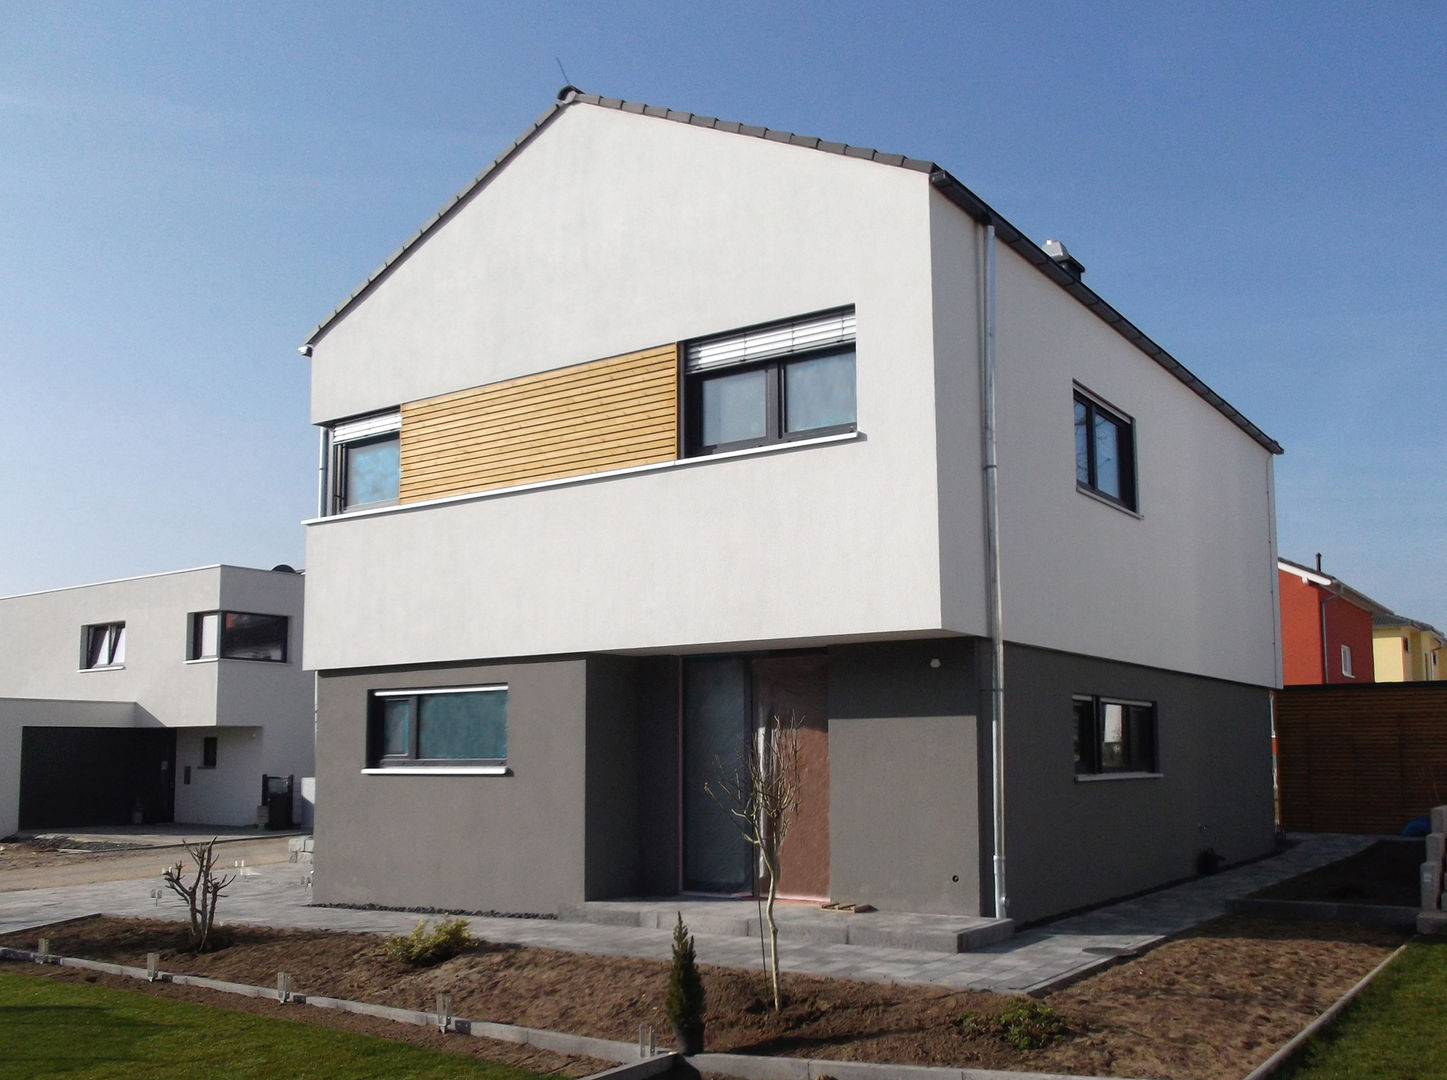 Einfamilienhaus in Steinbach, lauth : van holst architekten lauth : van holst architekten Modern home